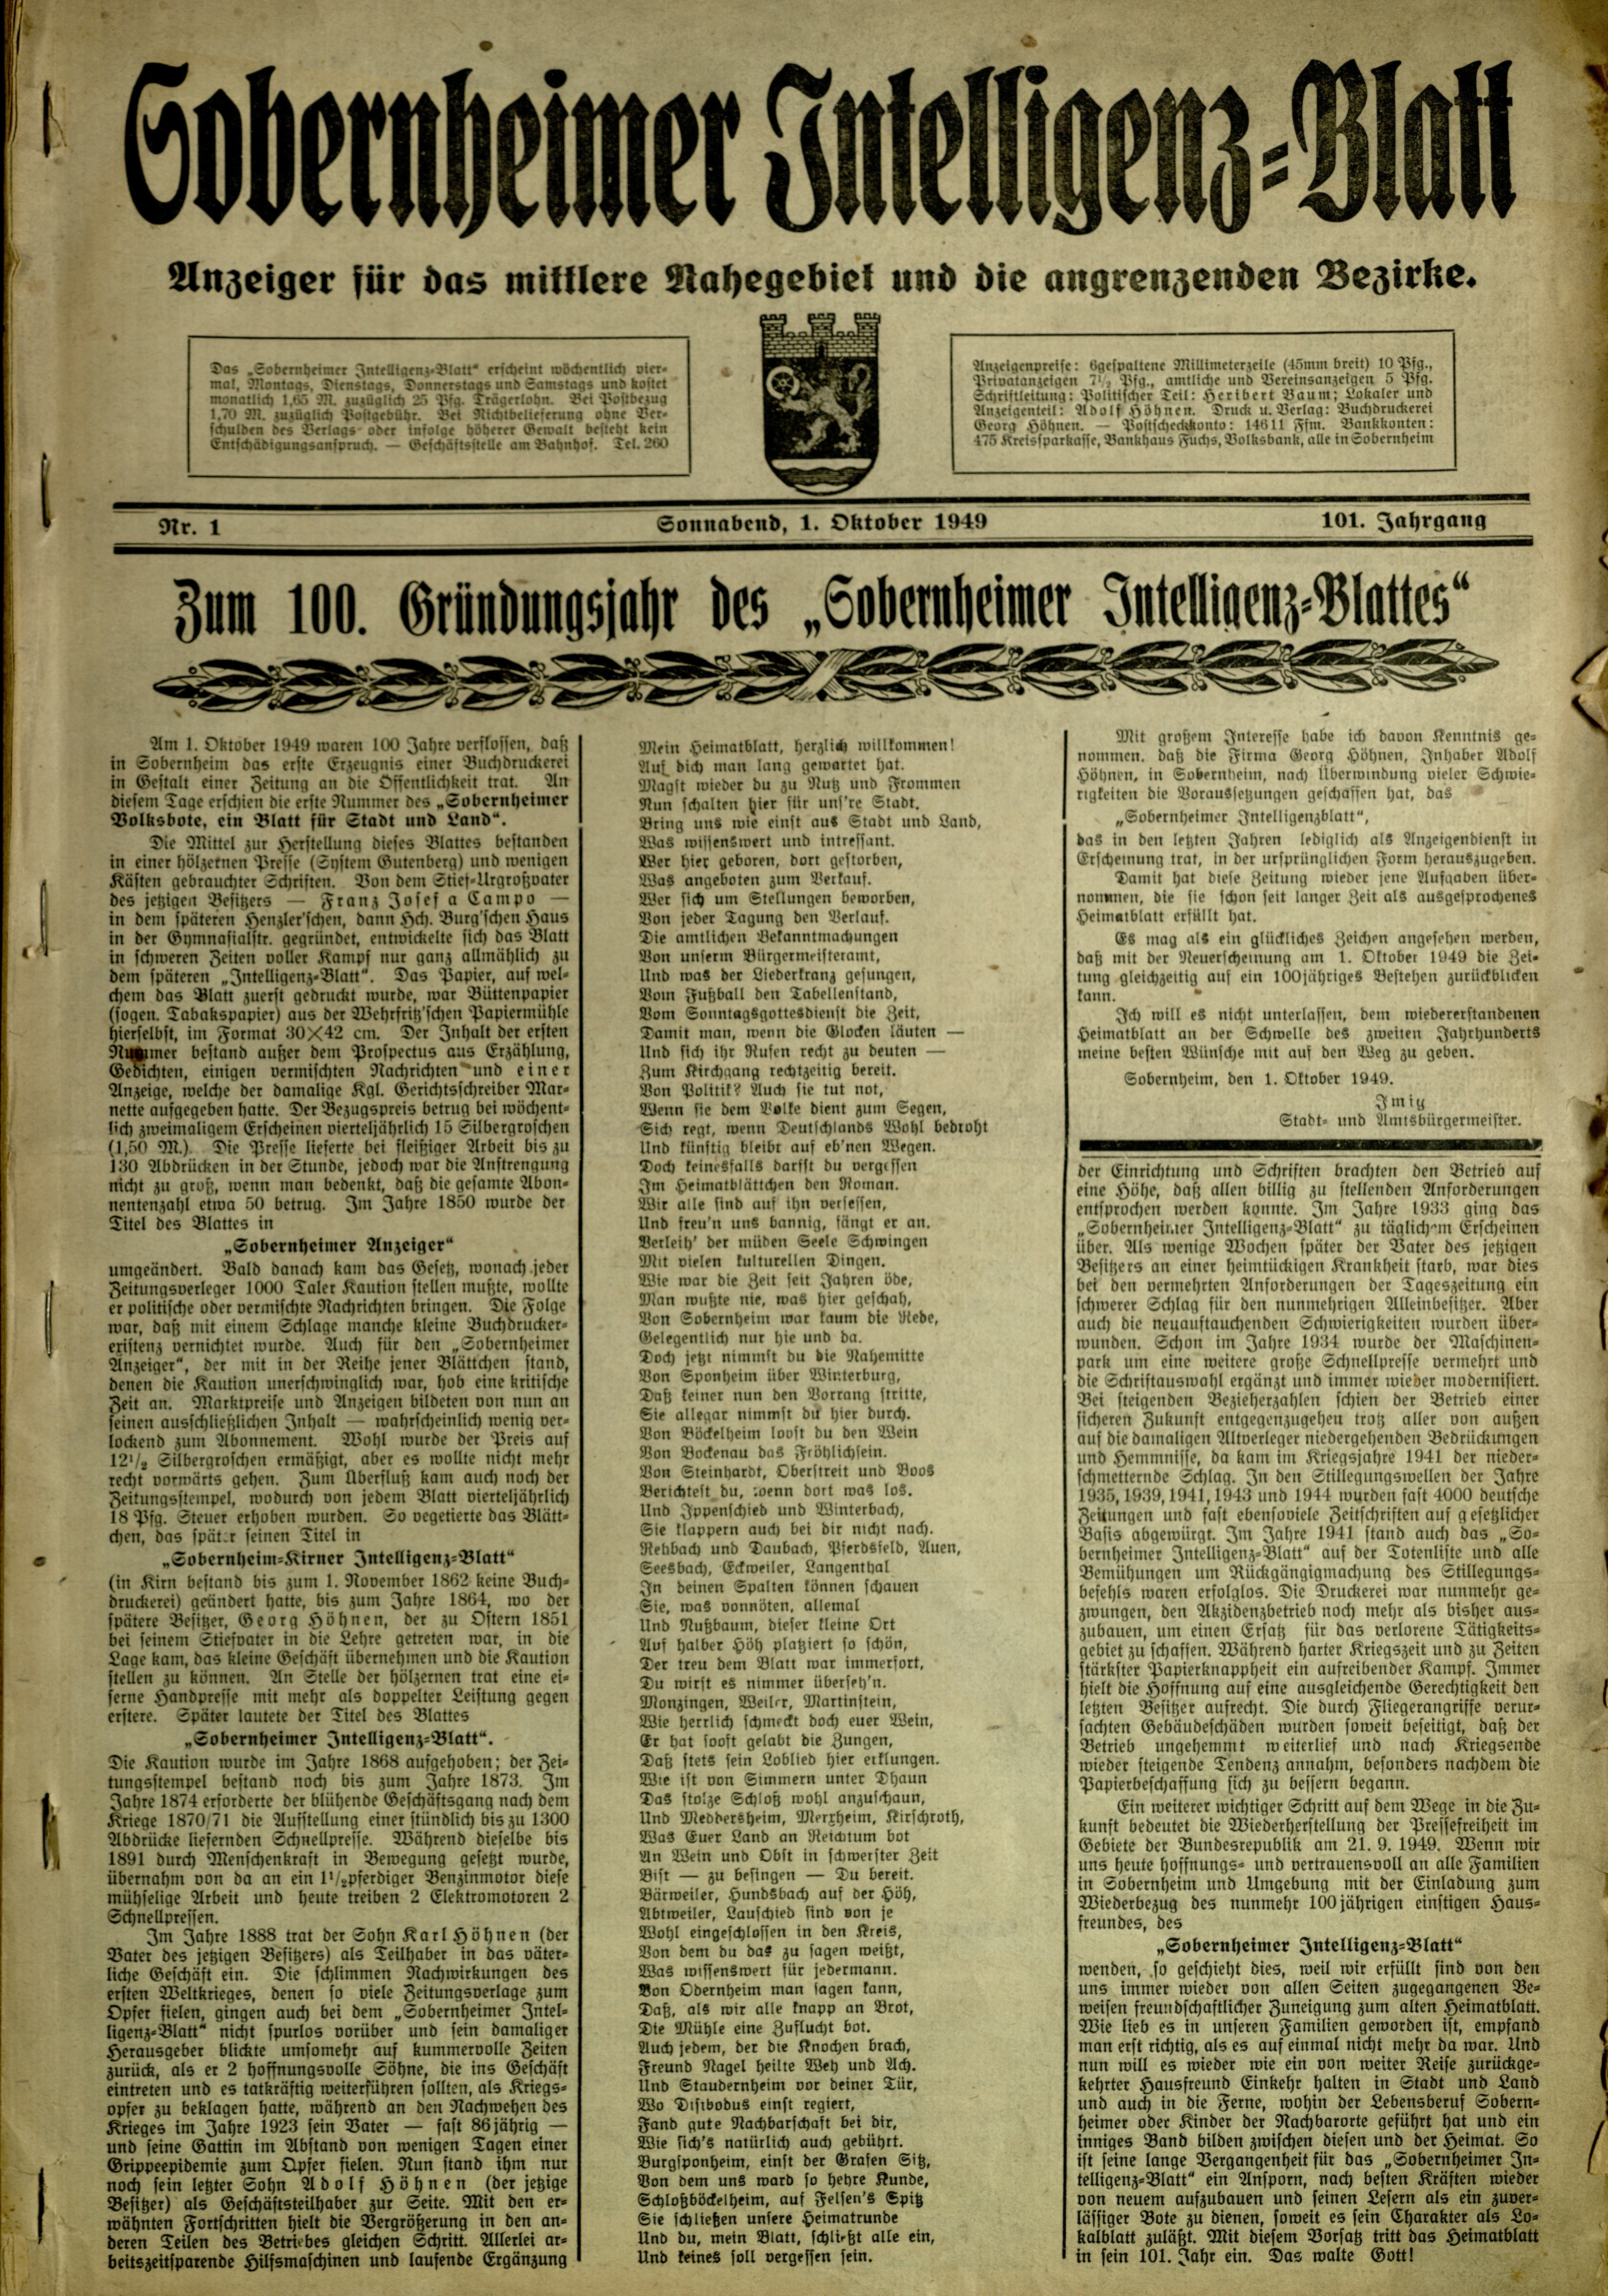 Zeitung: Sobernheimer Intelligenzblatt; Oktober 1949, Jg. 101 Nr. 1 (Heimatmuseum Bad Sobernheim CC BY-NC-SA)